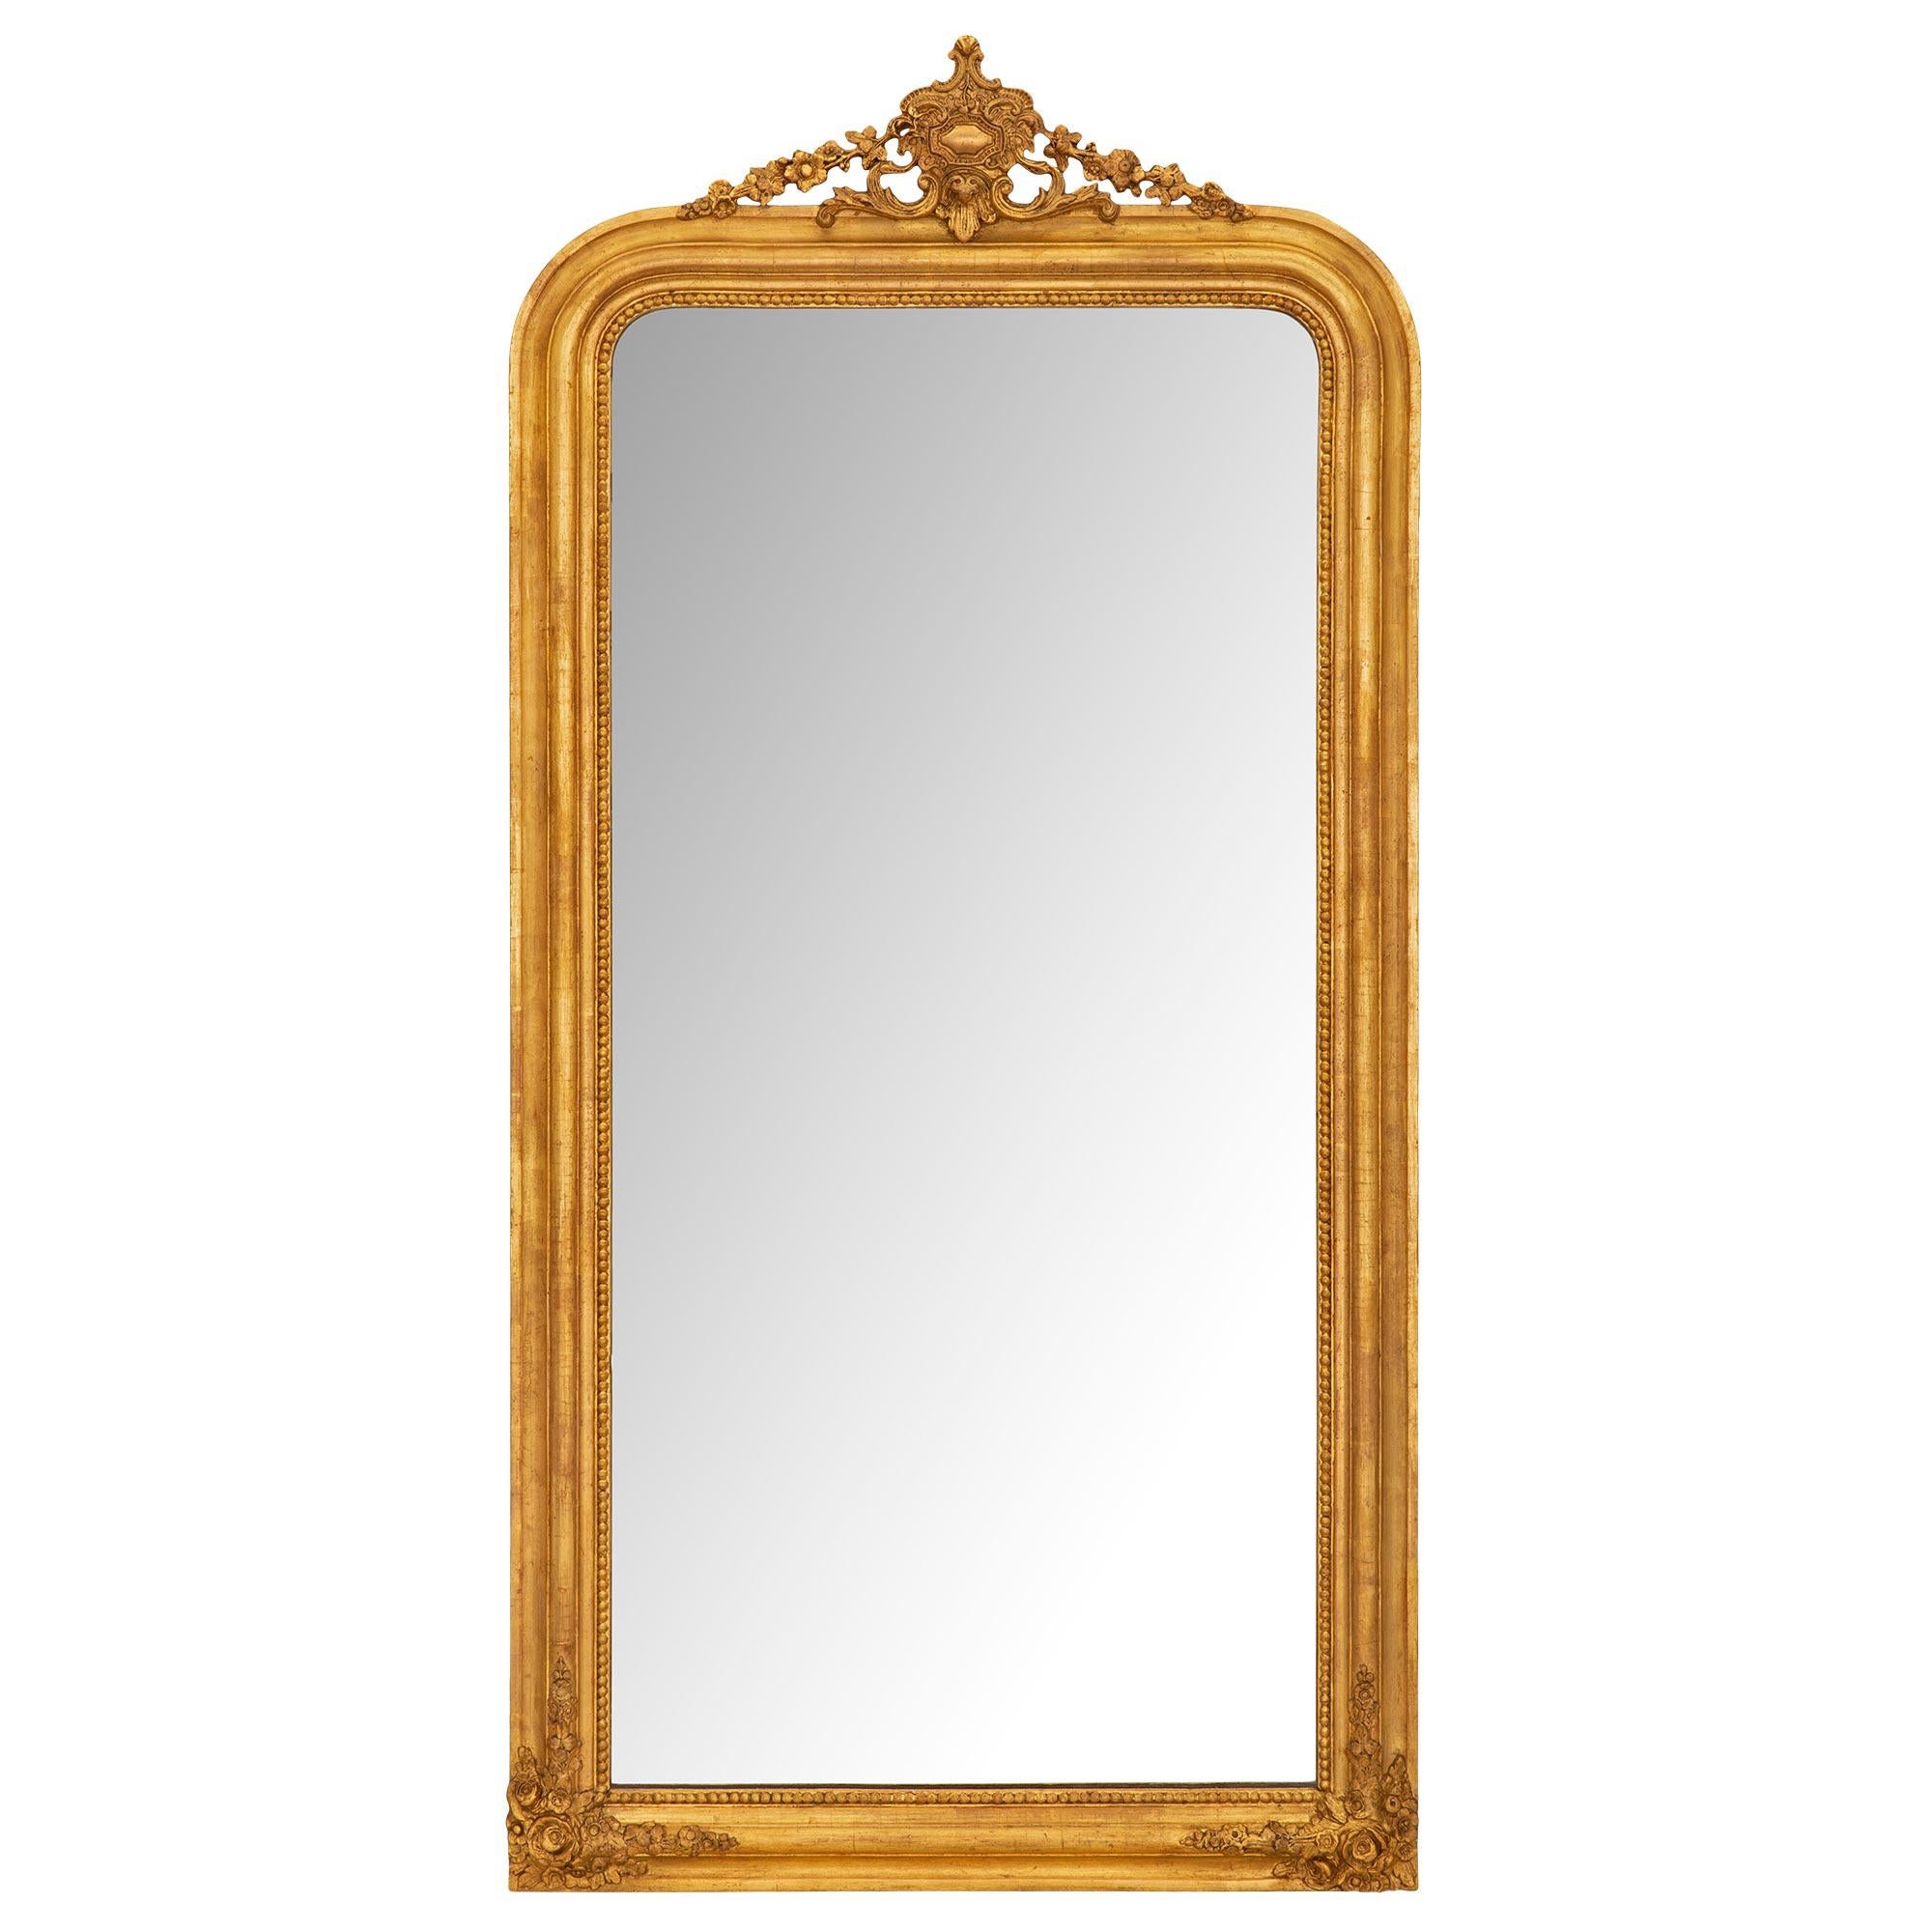 Miroir en bois doré d'époque Louis Philippe du 19ème siècle français